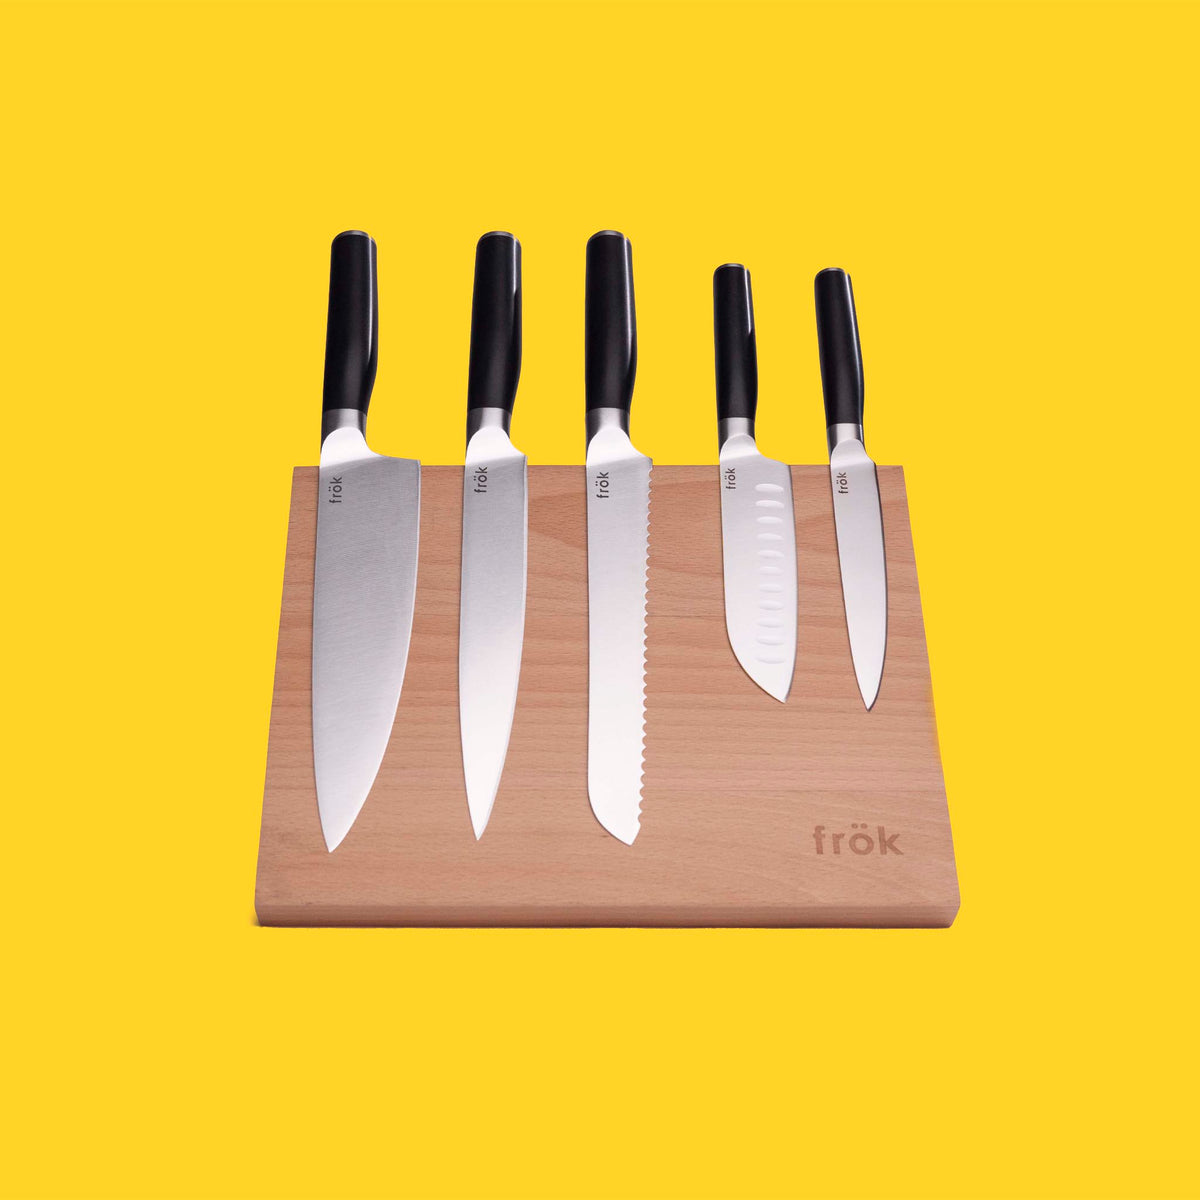 6 Piece Knife Set